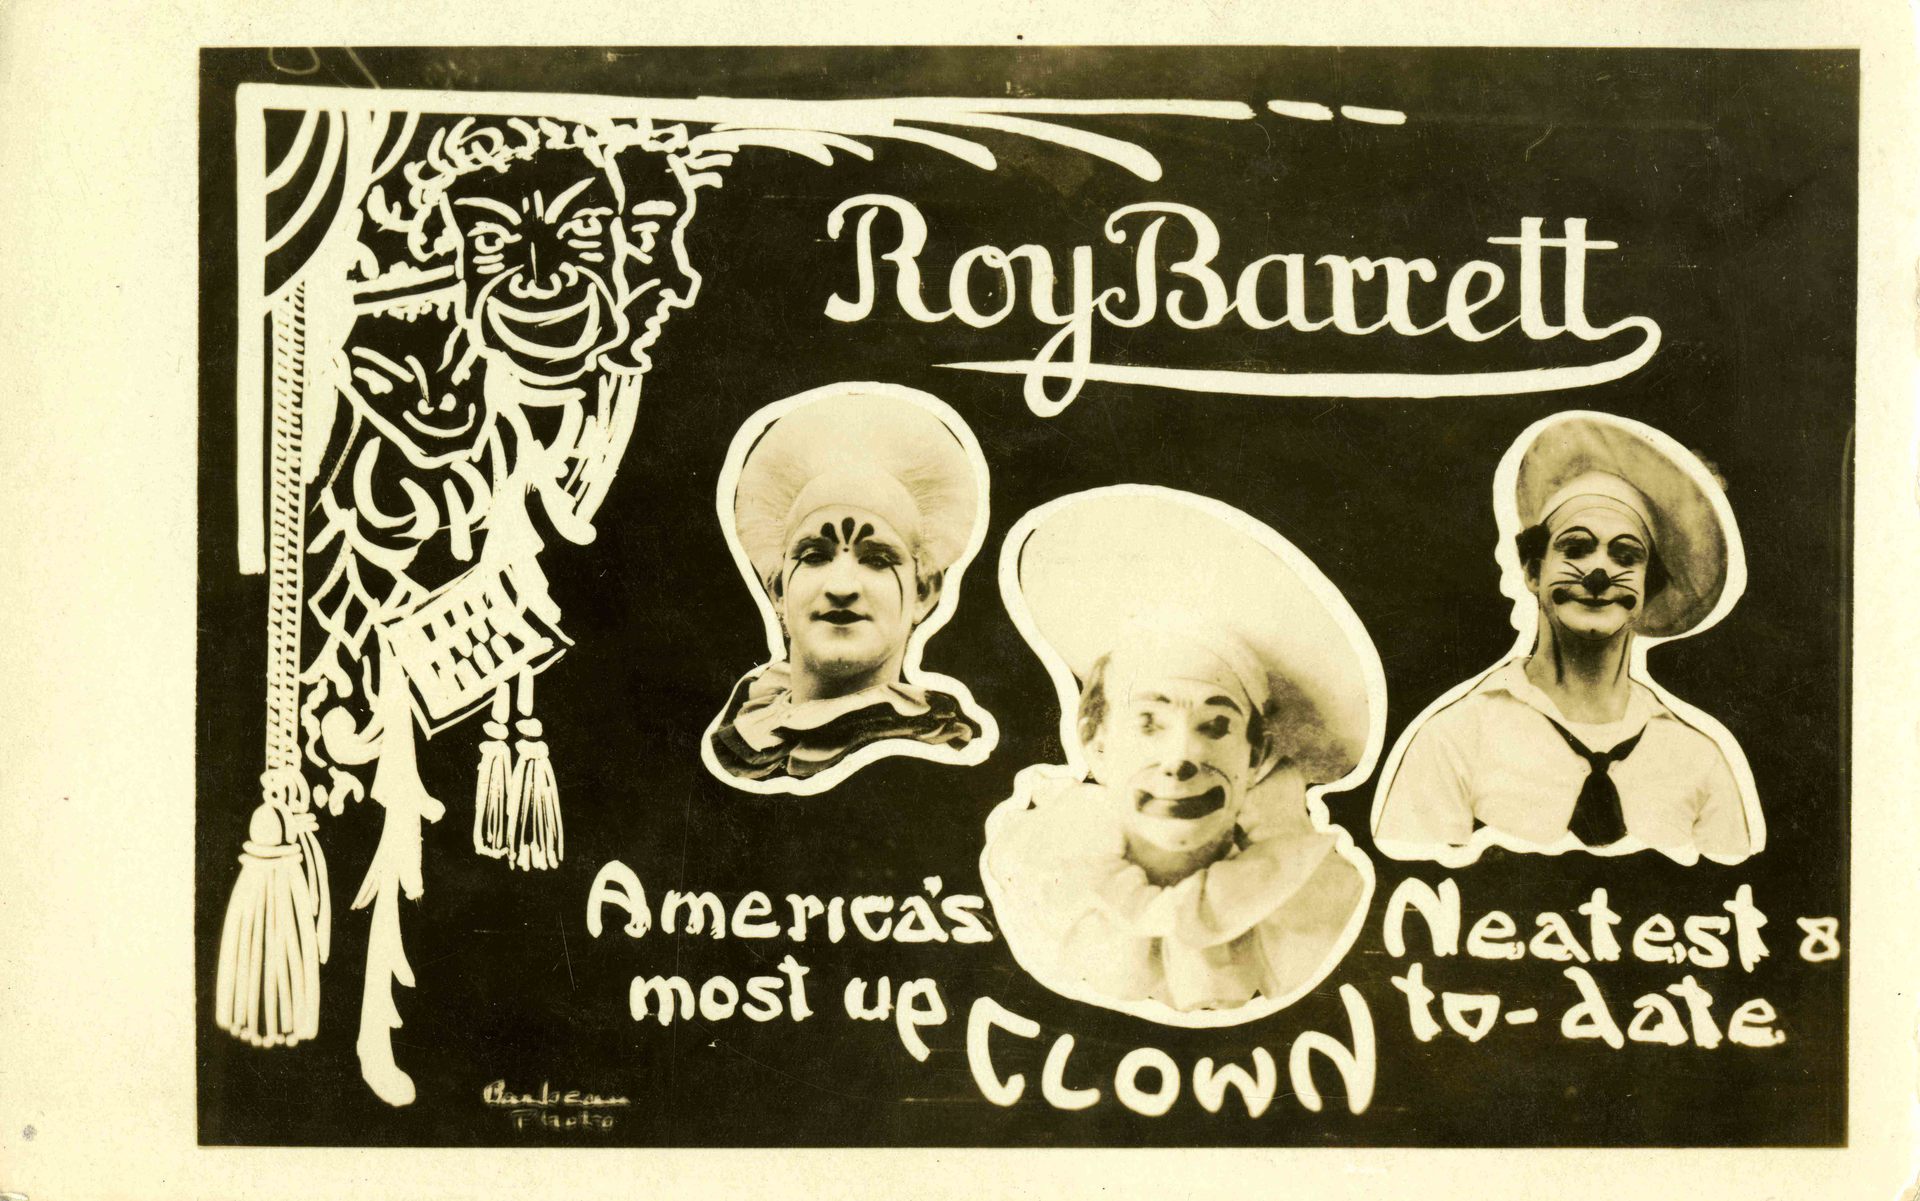 Clown: Roy Barrett